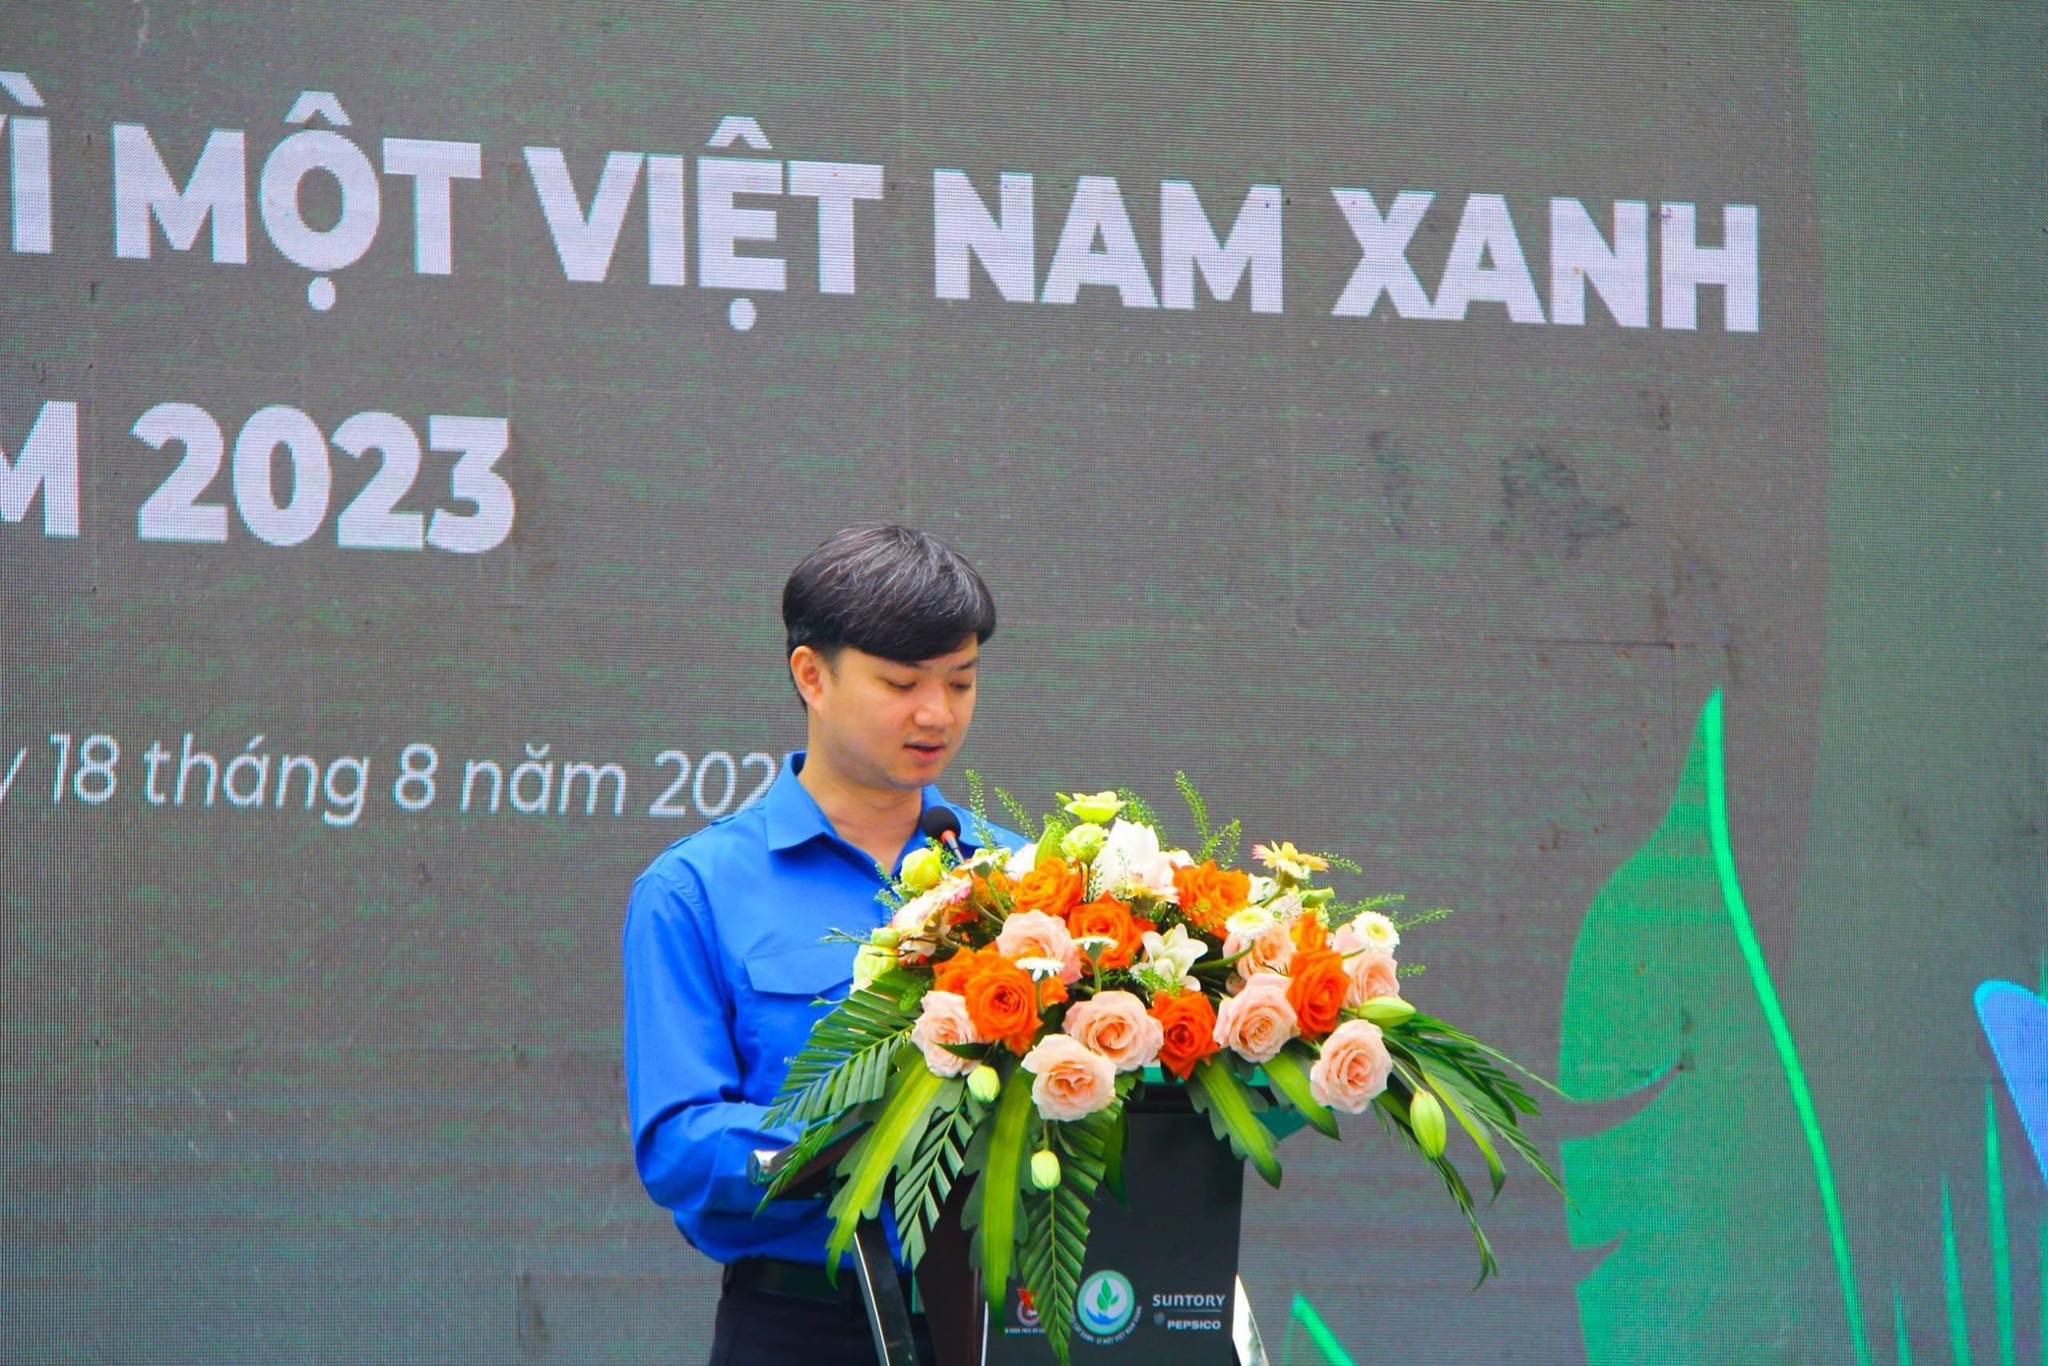 Triệu Cây Xanh- Vì Một Việt Nam Xanh